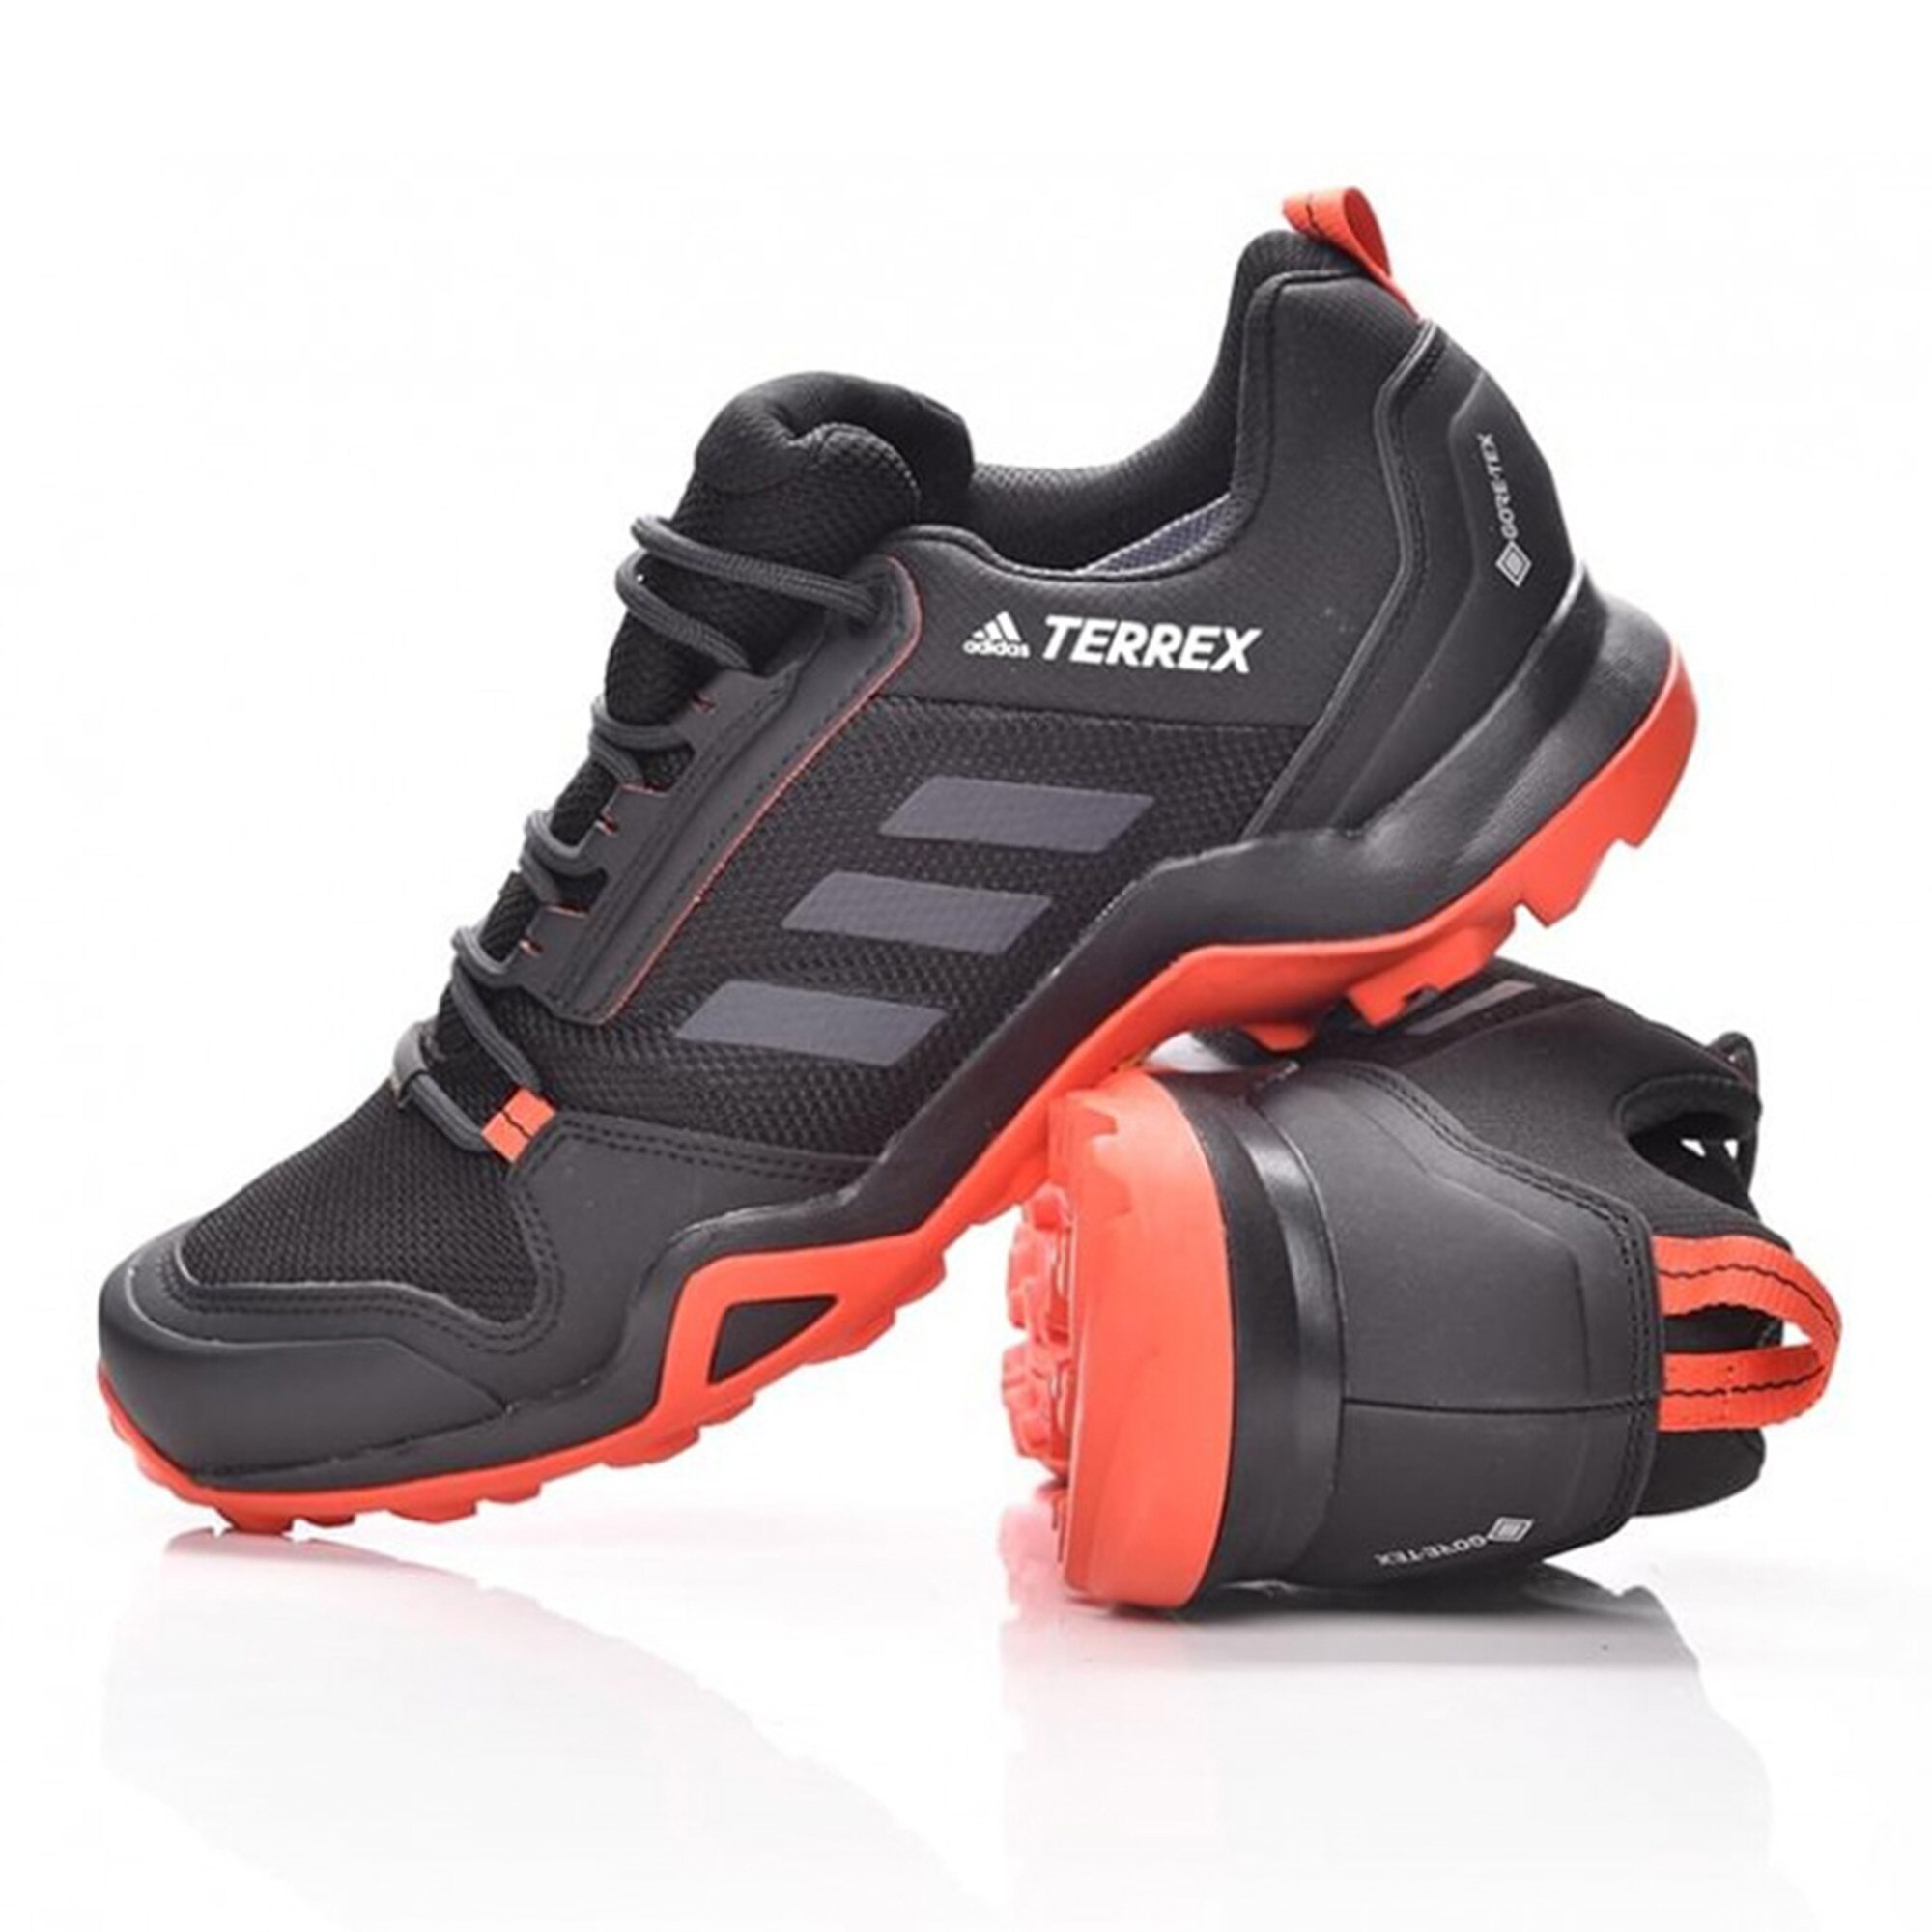 Adidas terrex ax3. Adidas Terrex ax3 GTX. Adidas Terrex ax3 высокие. Adidas Terrex ax3 черный.